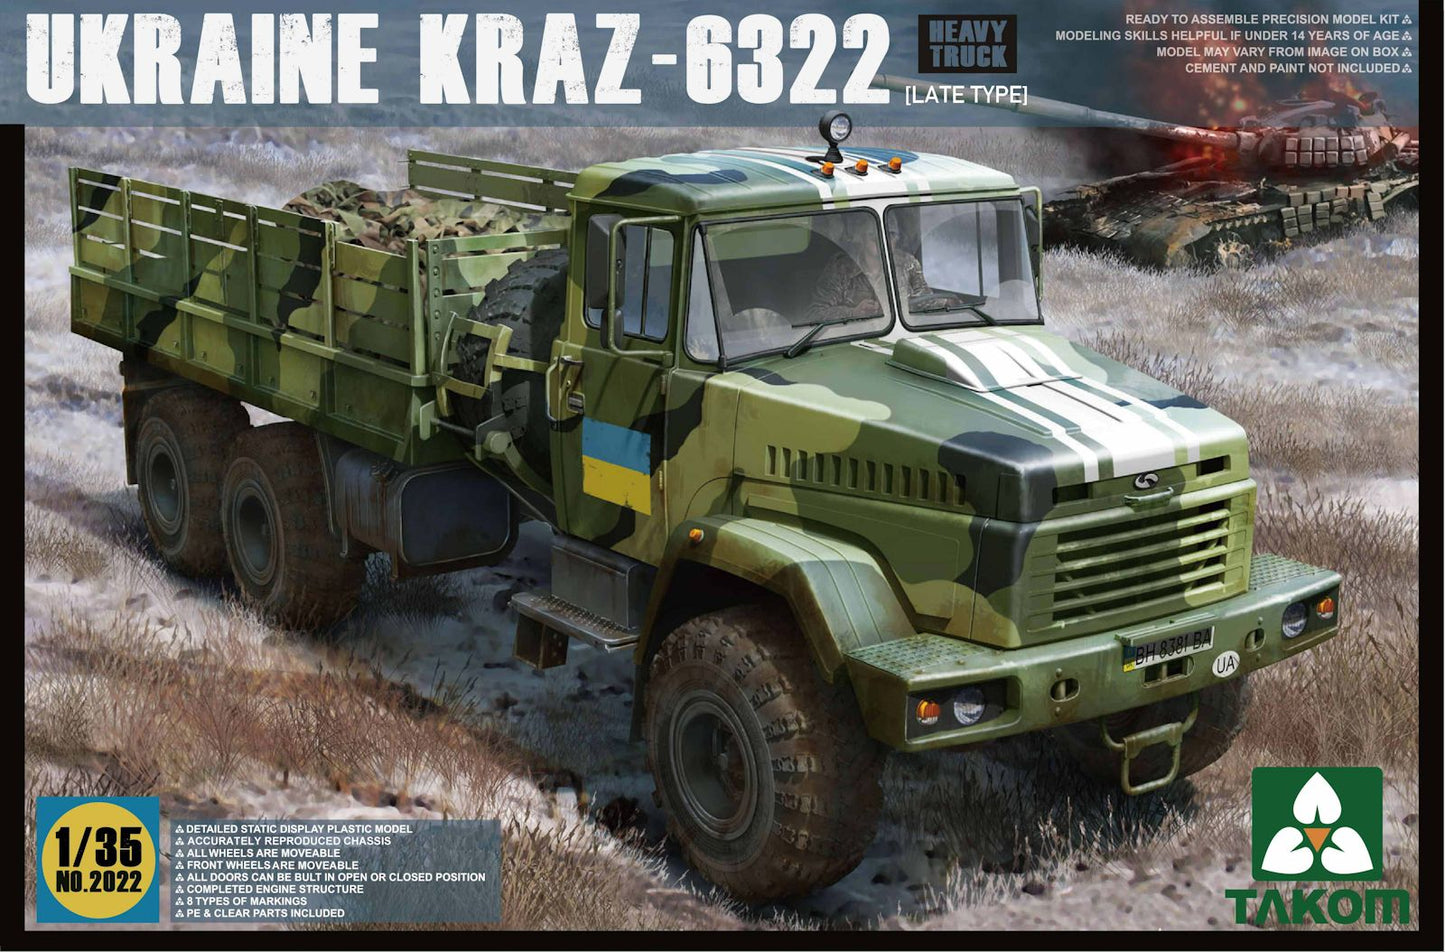 TA-2022 - бортовой грузовик КРАЗ-6322 поздней модификации, в комплекте есть фототравление